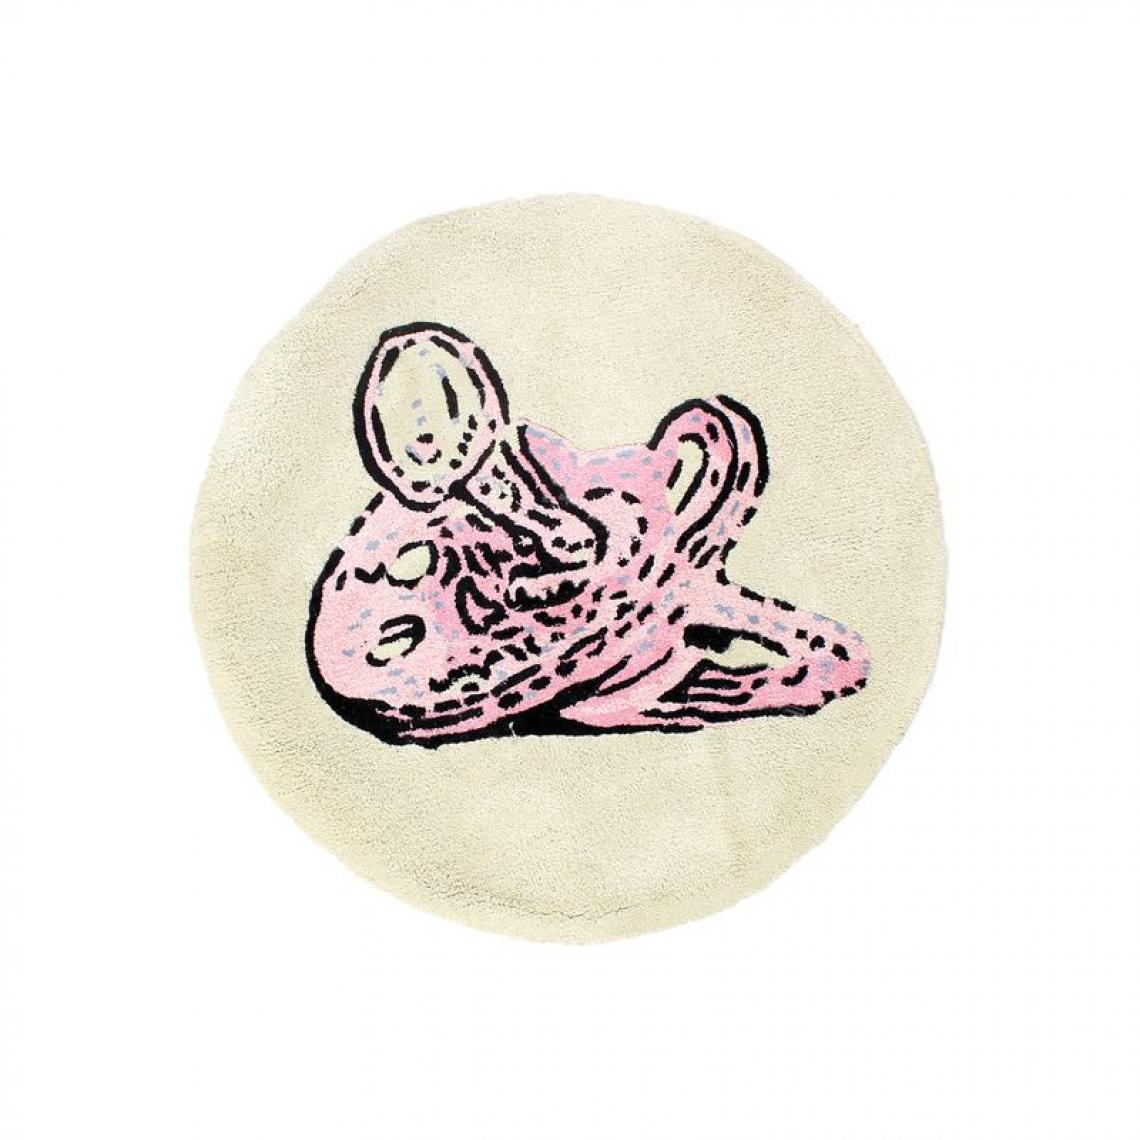 Thedecofactory - TOTOTTE GIRL - Tapis 100% coton dessin tototte bébé rose diam.70 - Tapis